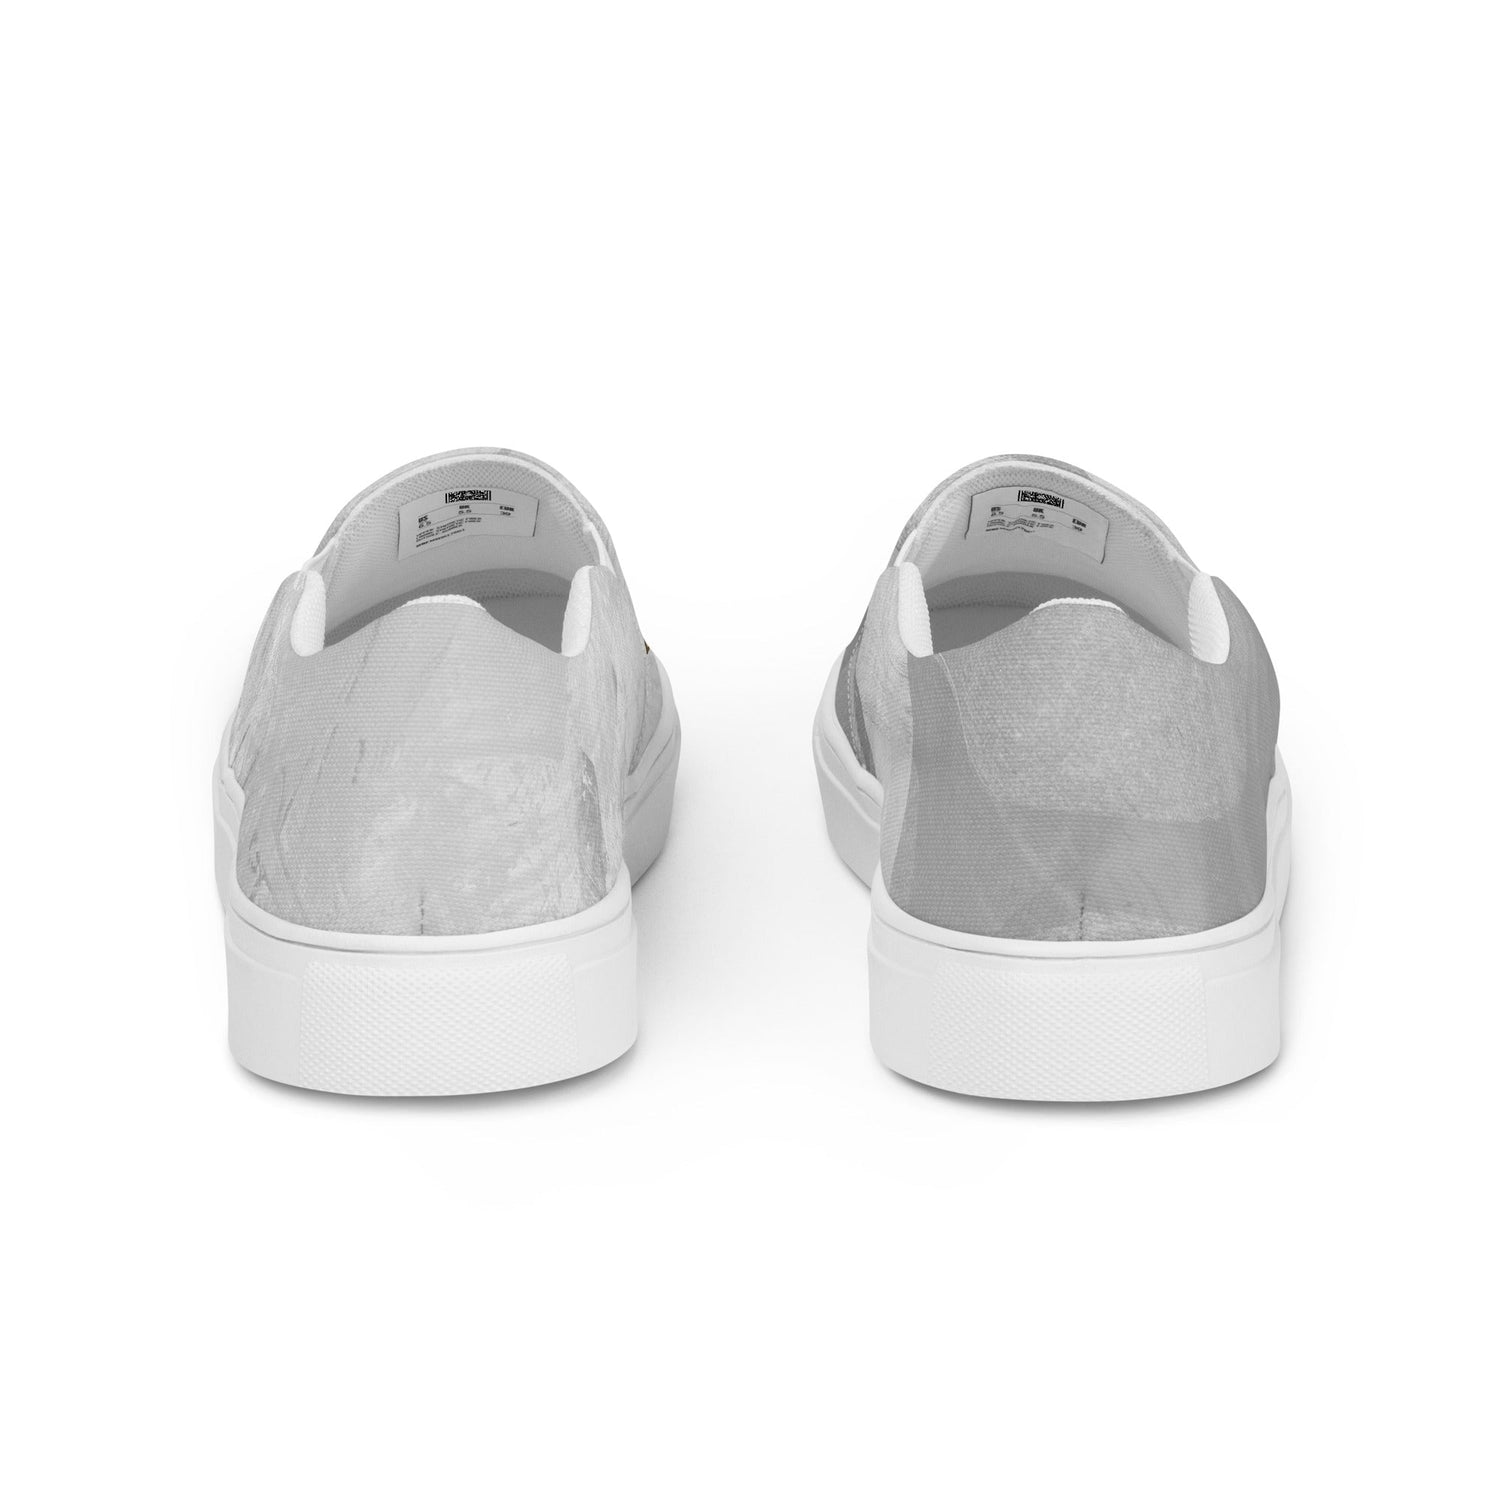 klasneakers Women’s slip-on canvas shoes - ATM